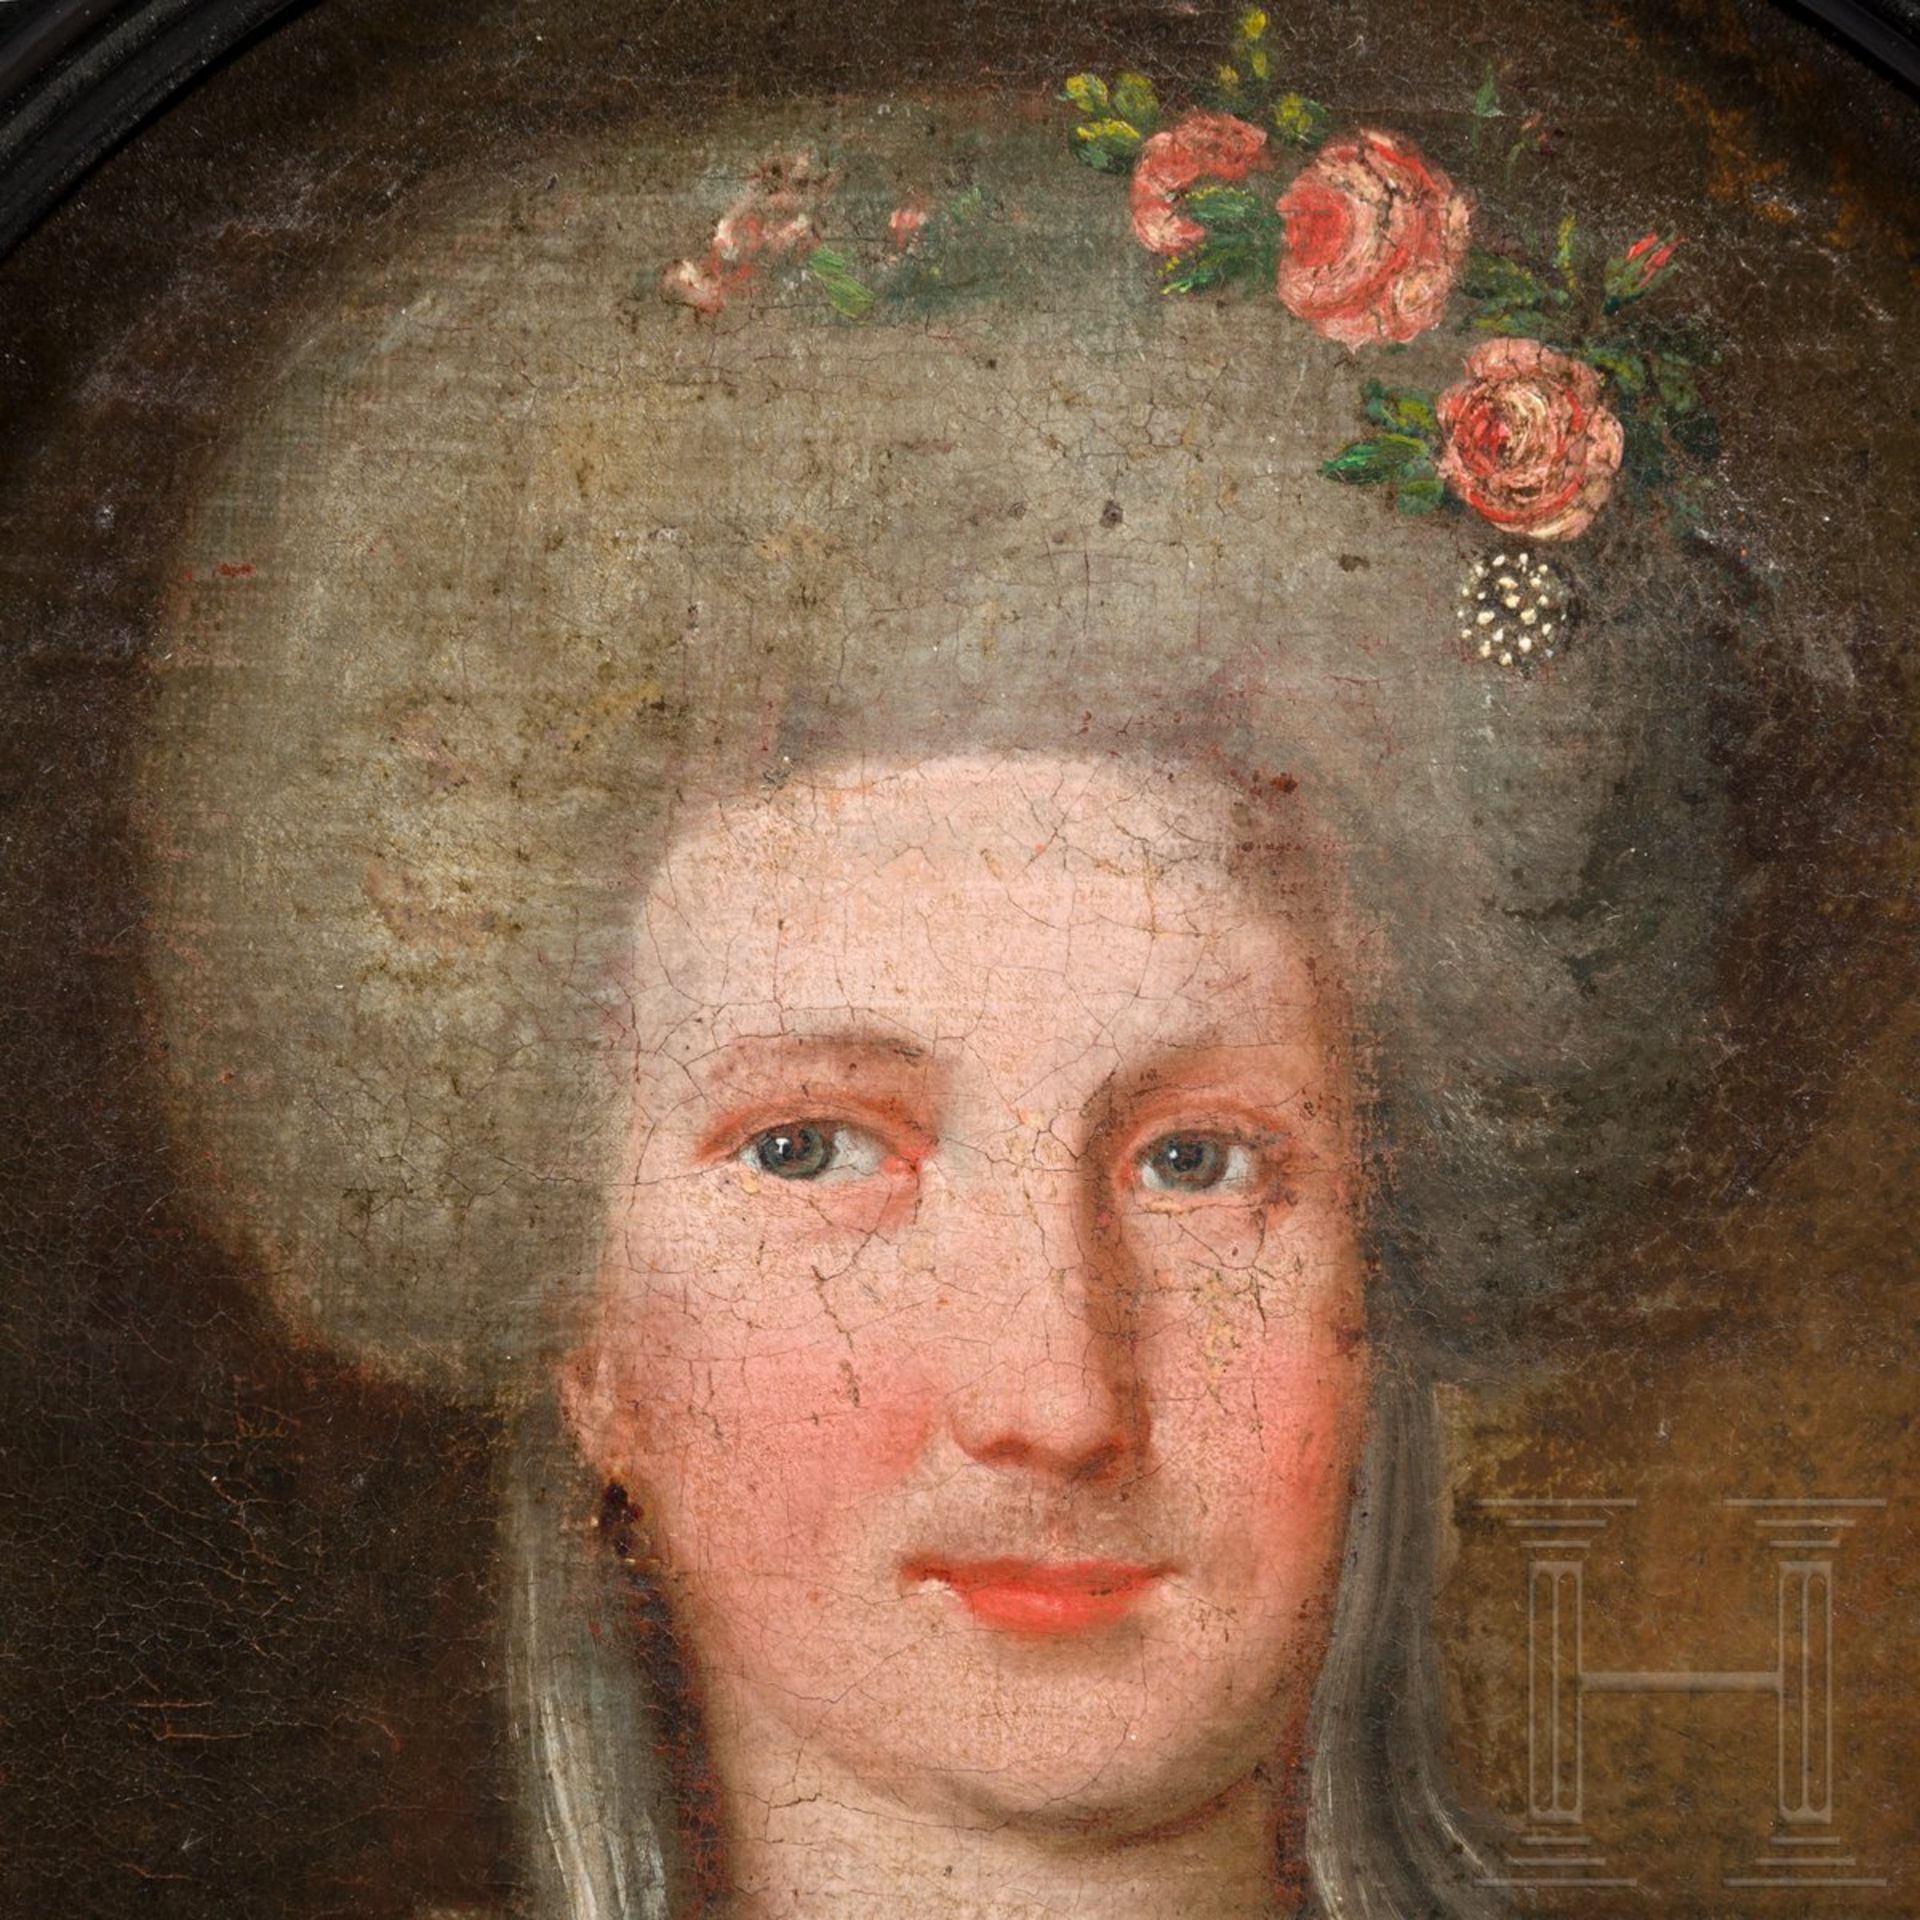 Bildnisse des preußischen Generals von Dalwig und seiner Ehefrau, um 1780 - Bild 5 aus 6